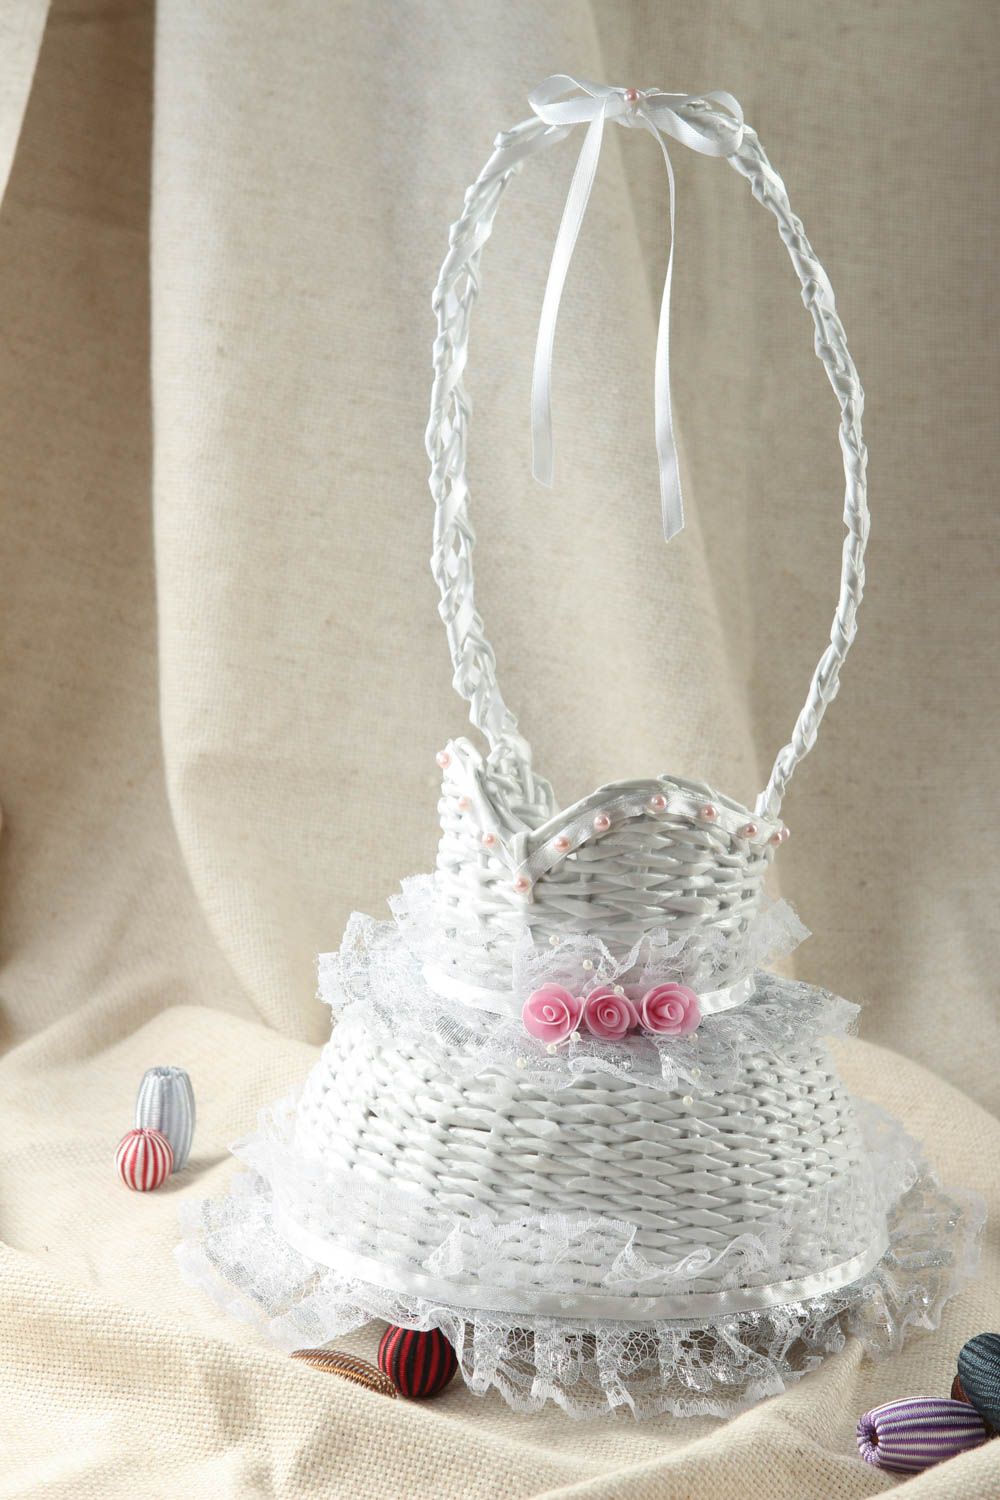 Stylish handmade accessory wedding designer bottle case cute wedding gift photo 1